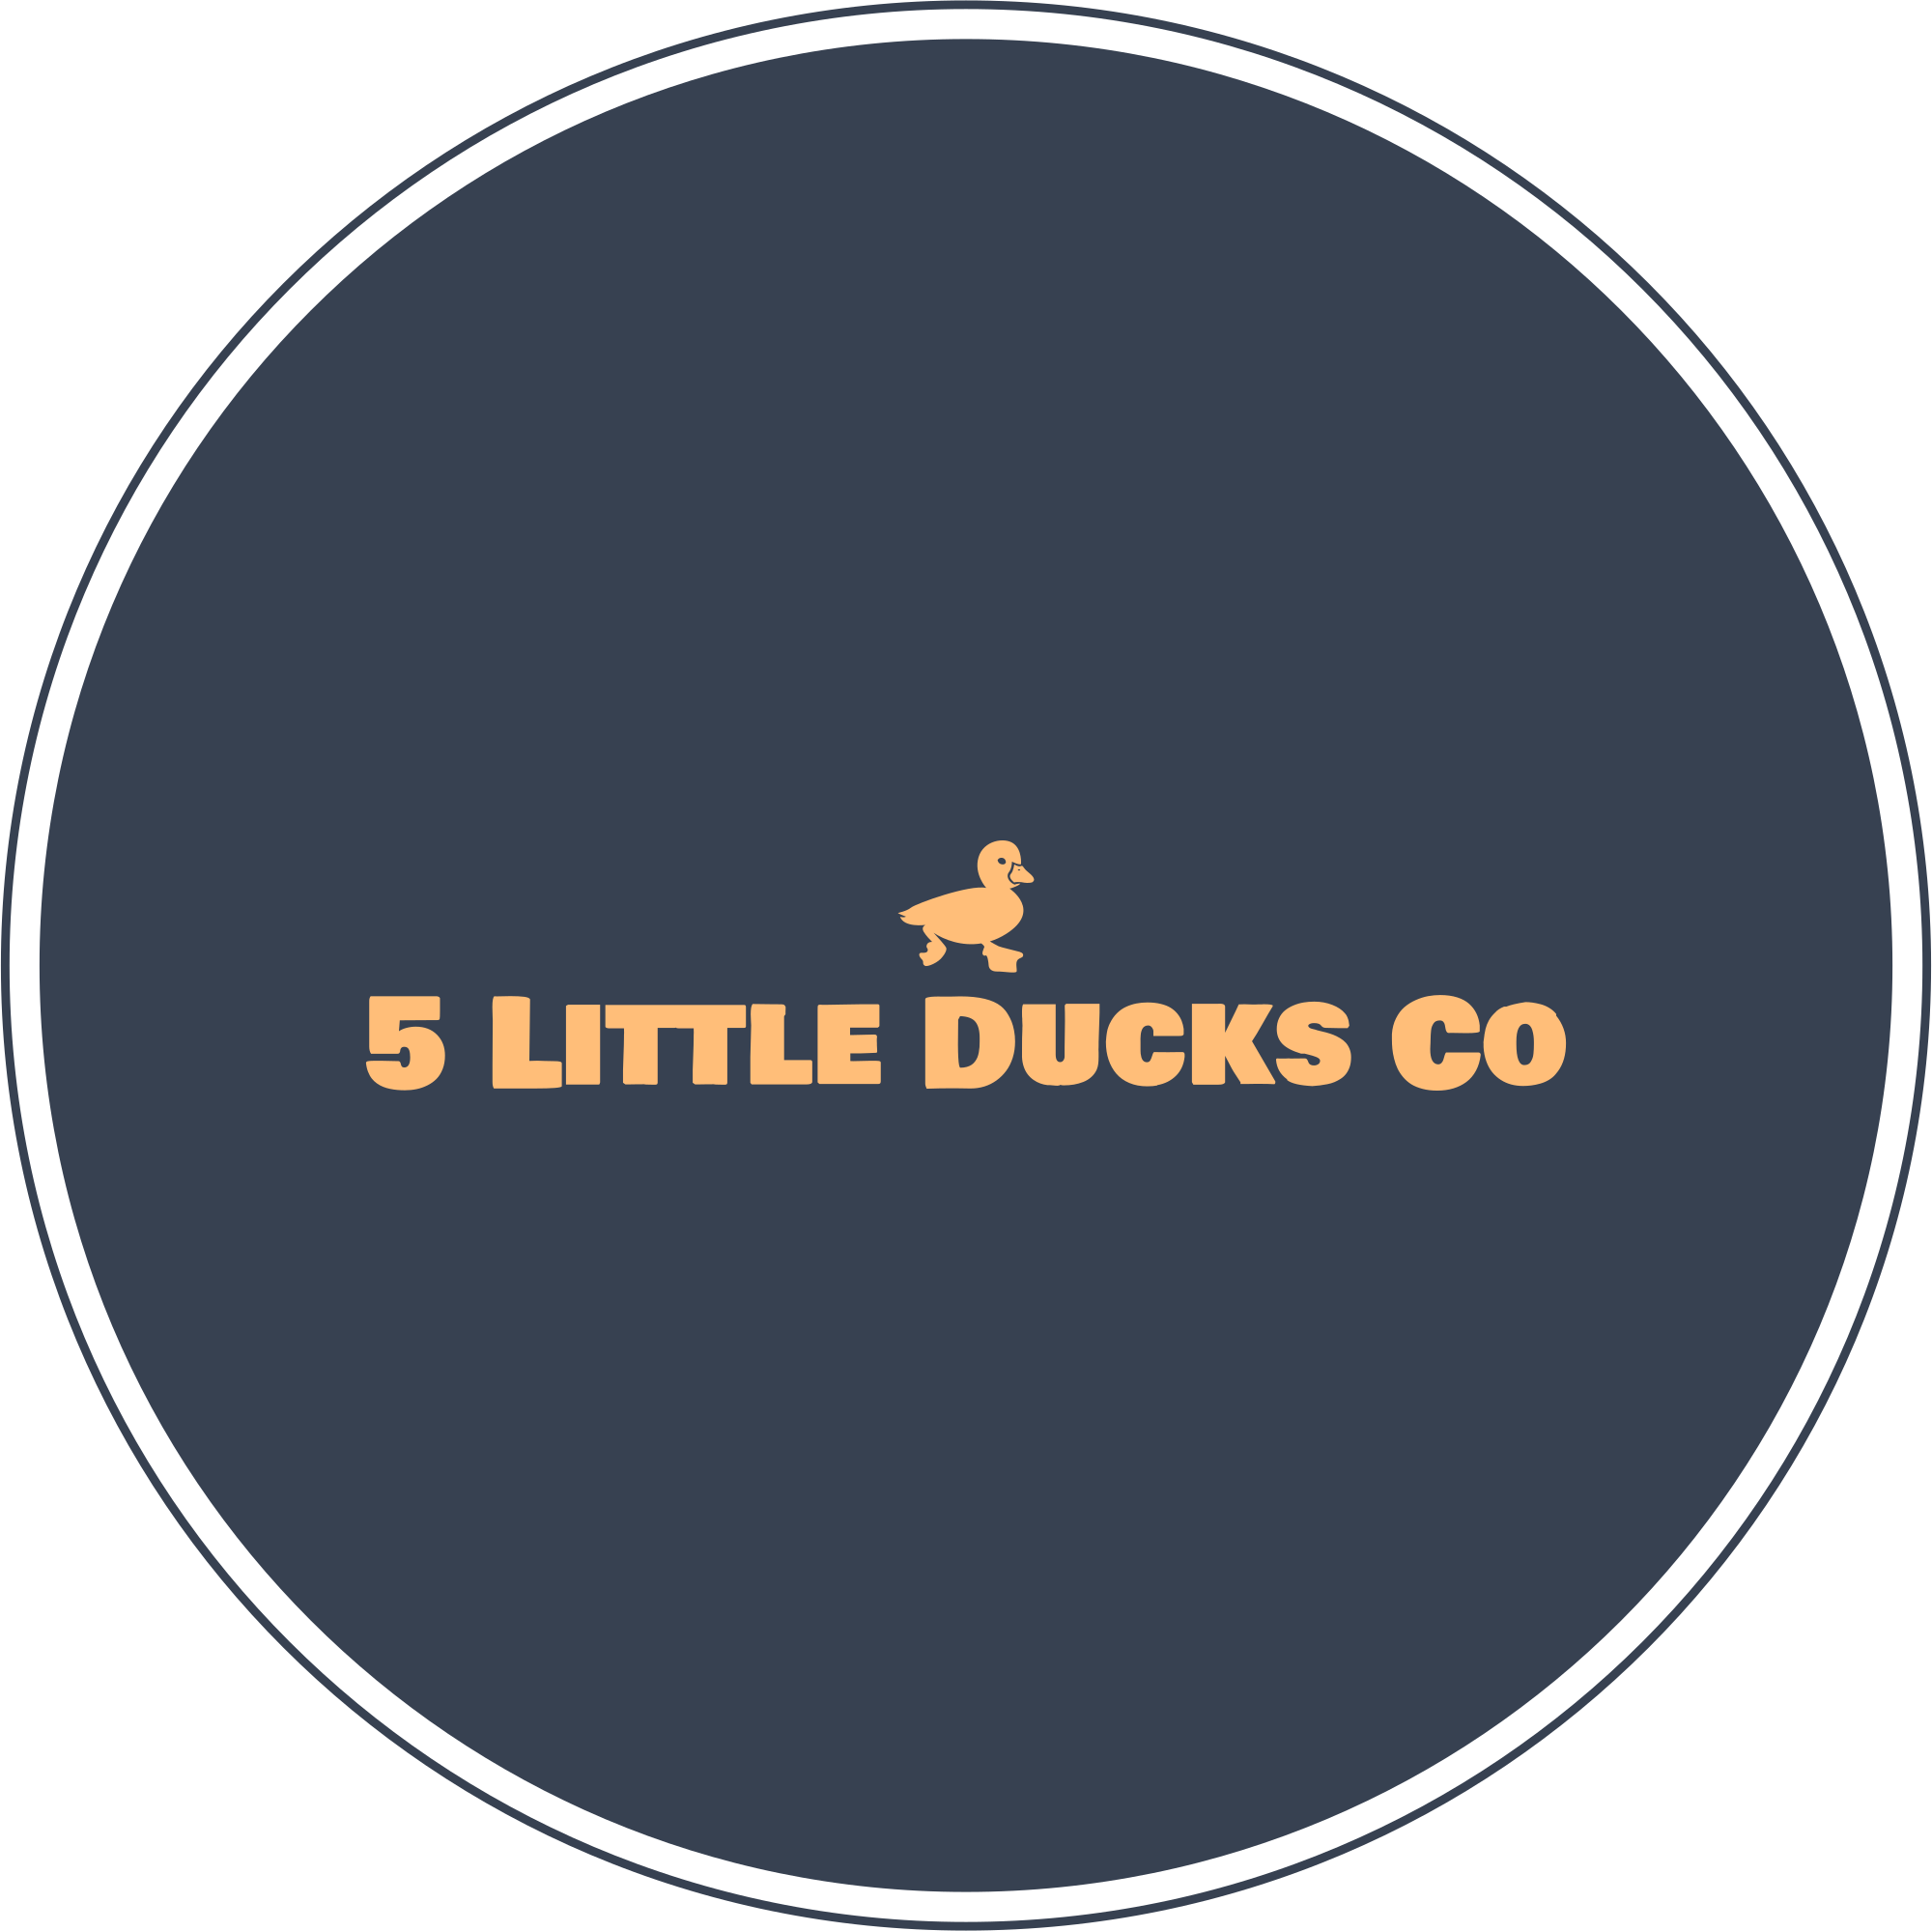 5 Little Ducks Co